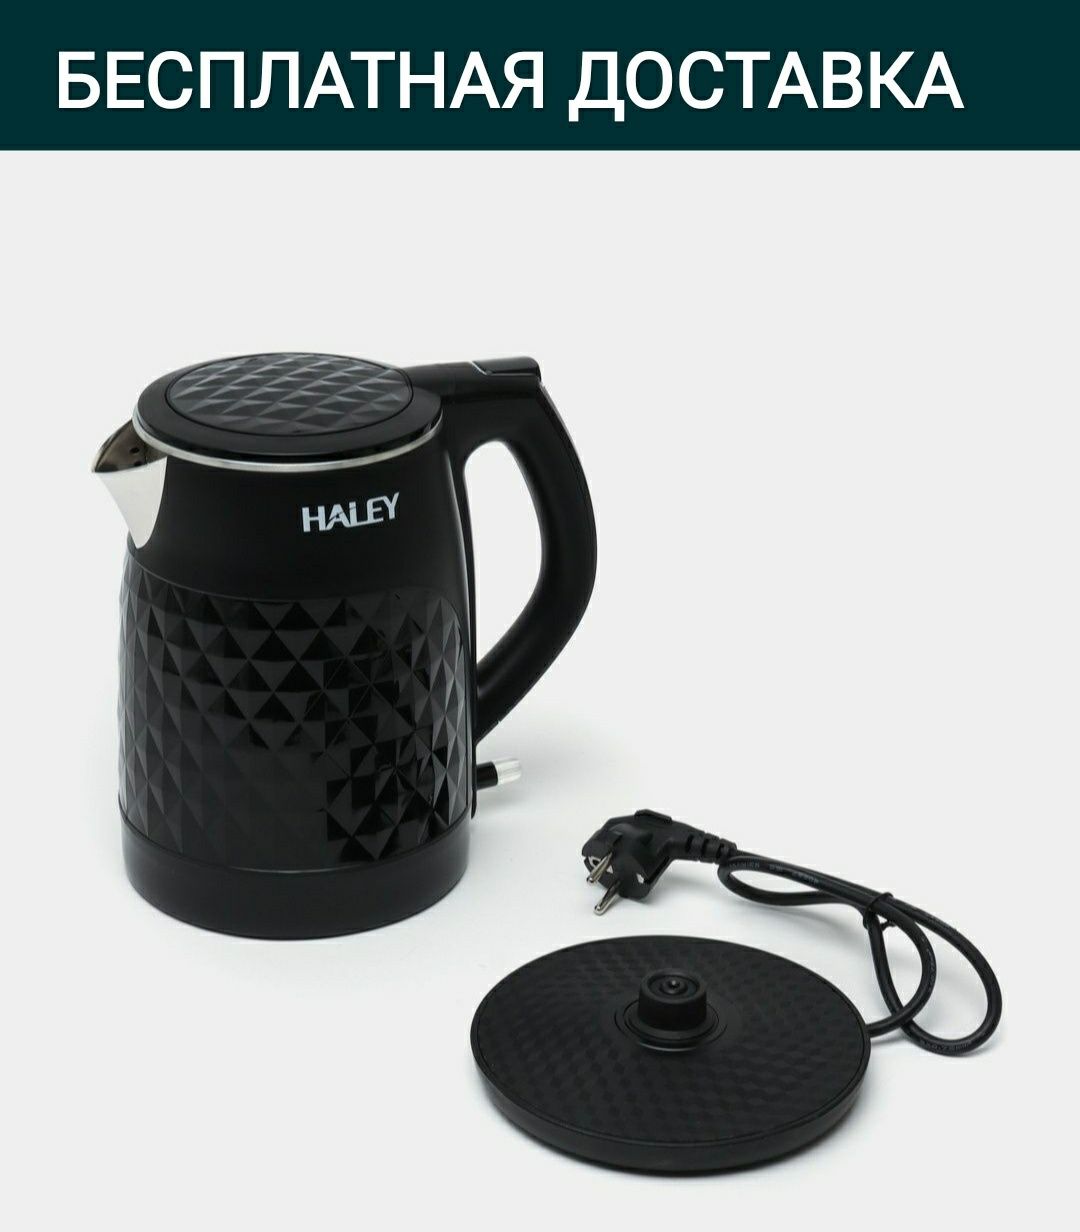 Тефаль электрический чайник tefal haley доставка бесплатная